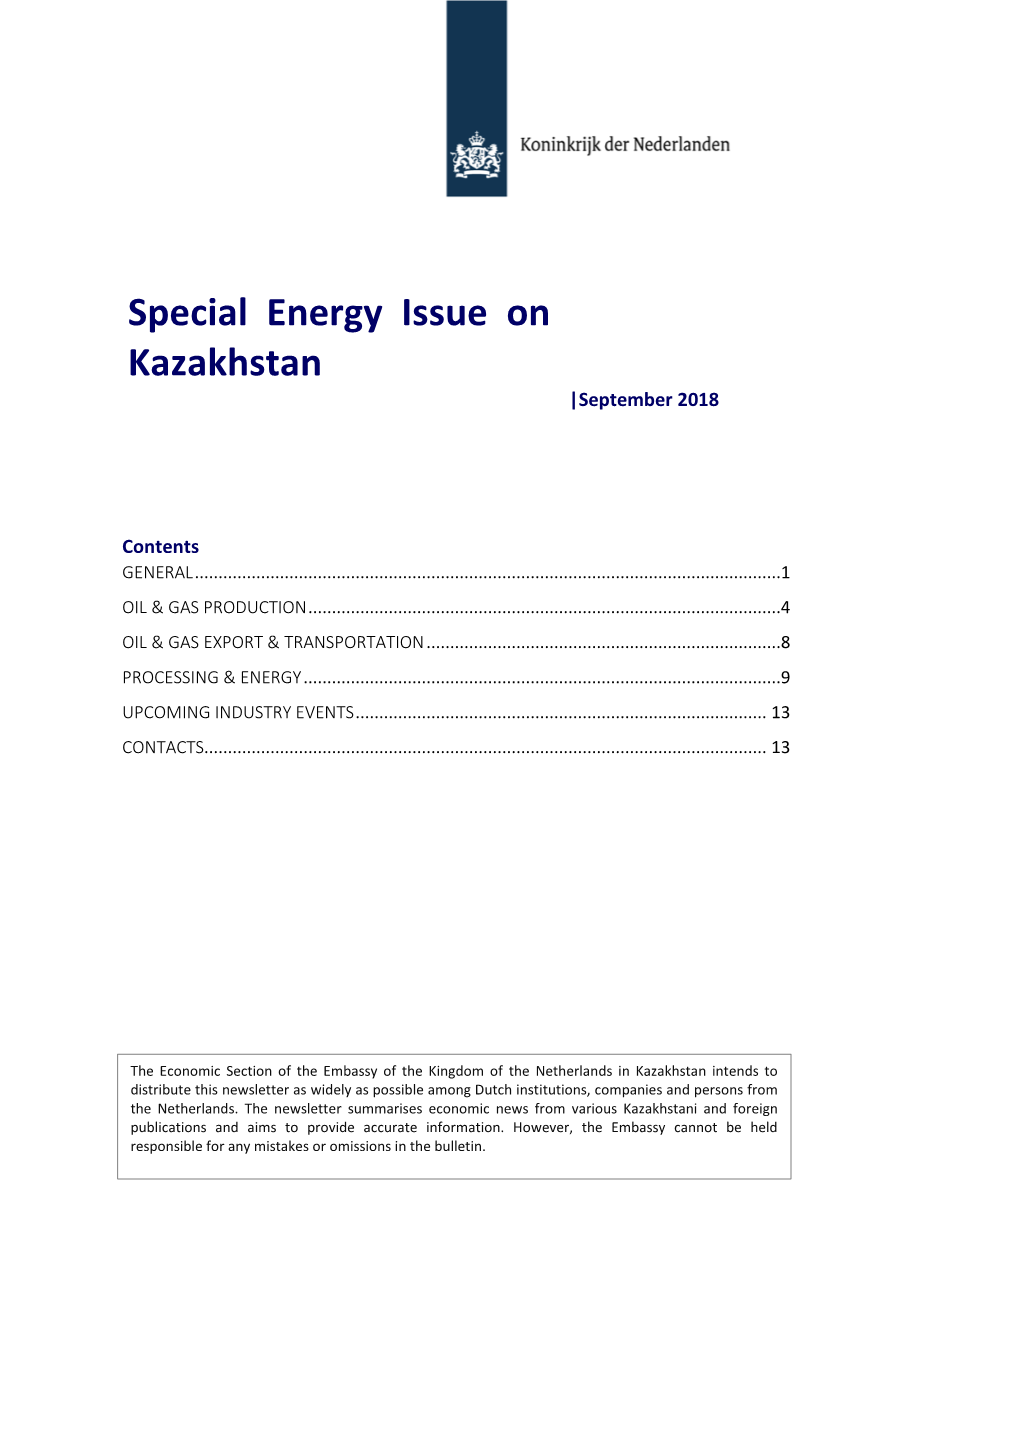 Special Energy Issue on Kazakhstan |September 2018